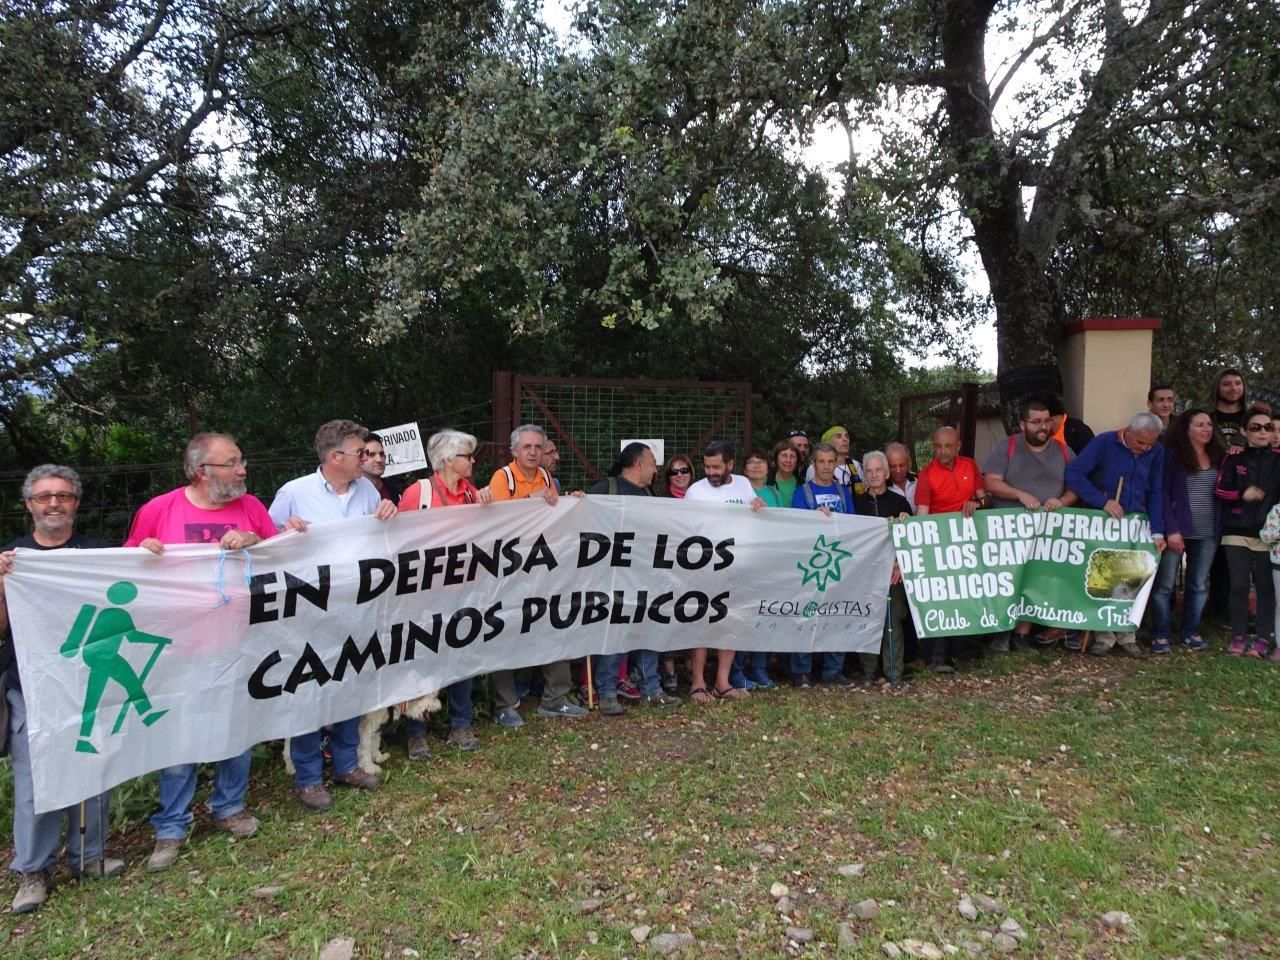 Una de las marchas organizadas desde Ecologistas en Acción para la recuperación del camino público Prado del Rey-El Bosque. FOTO: Ecologistas en Acción